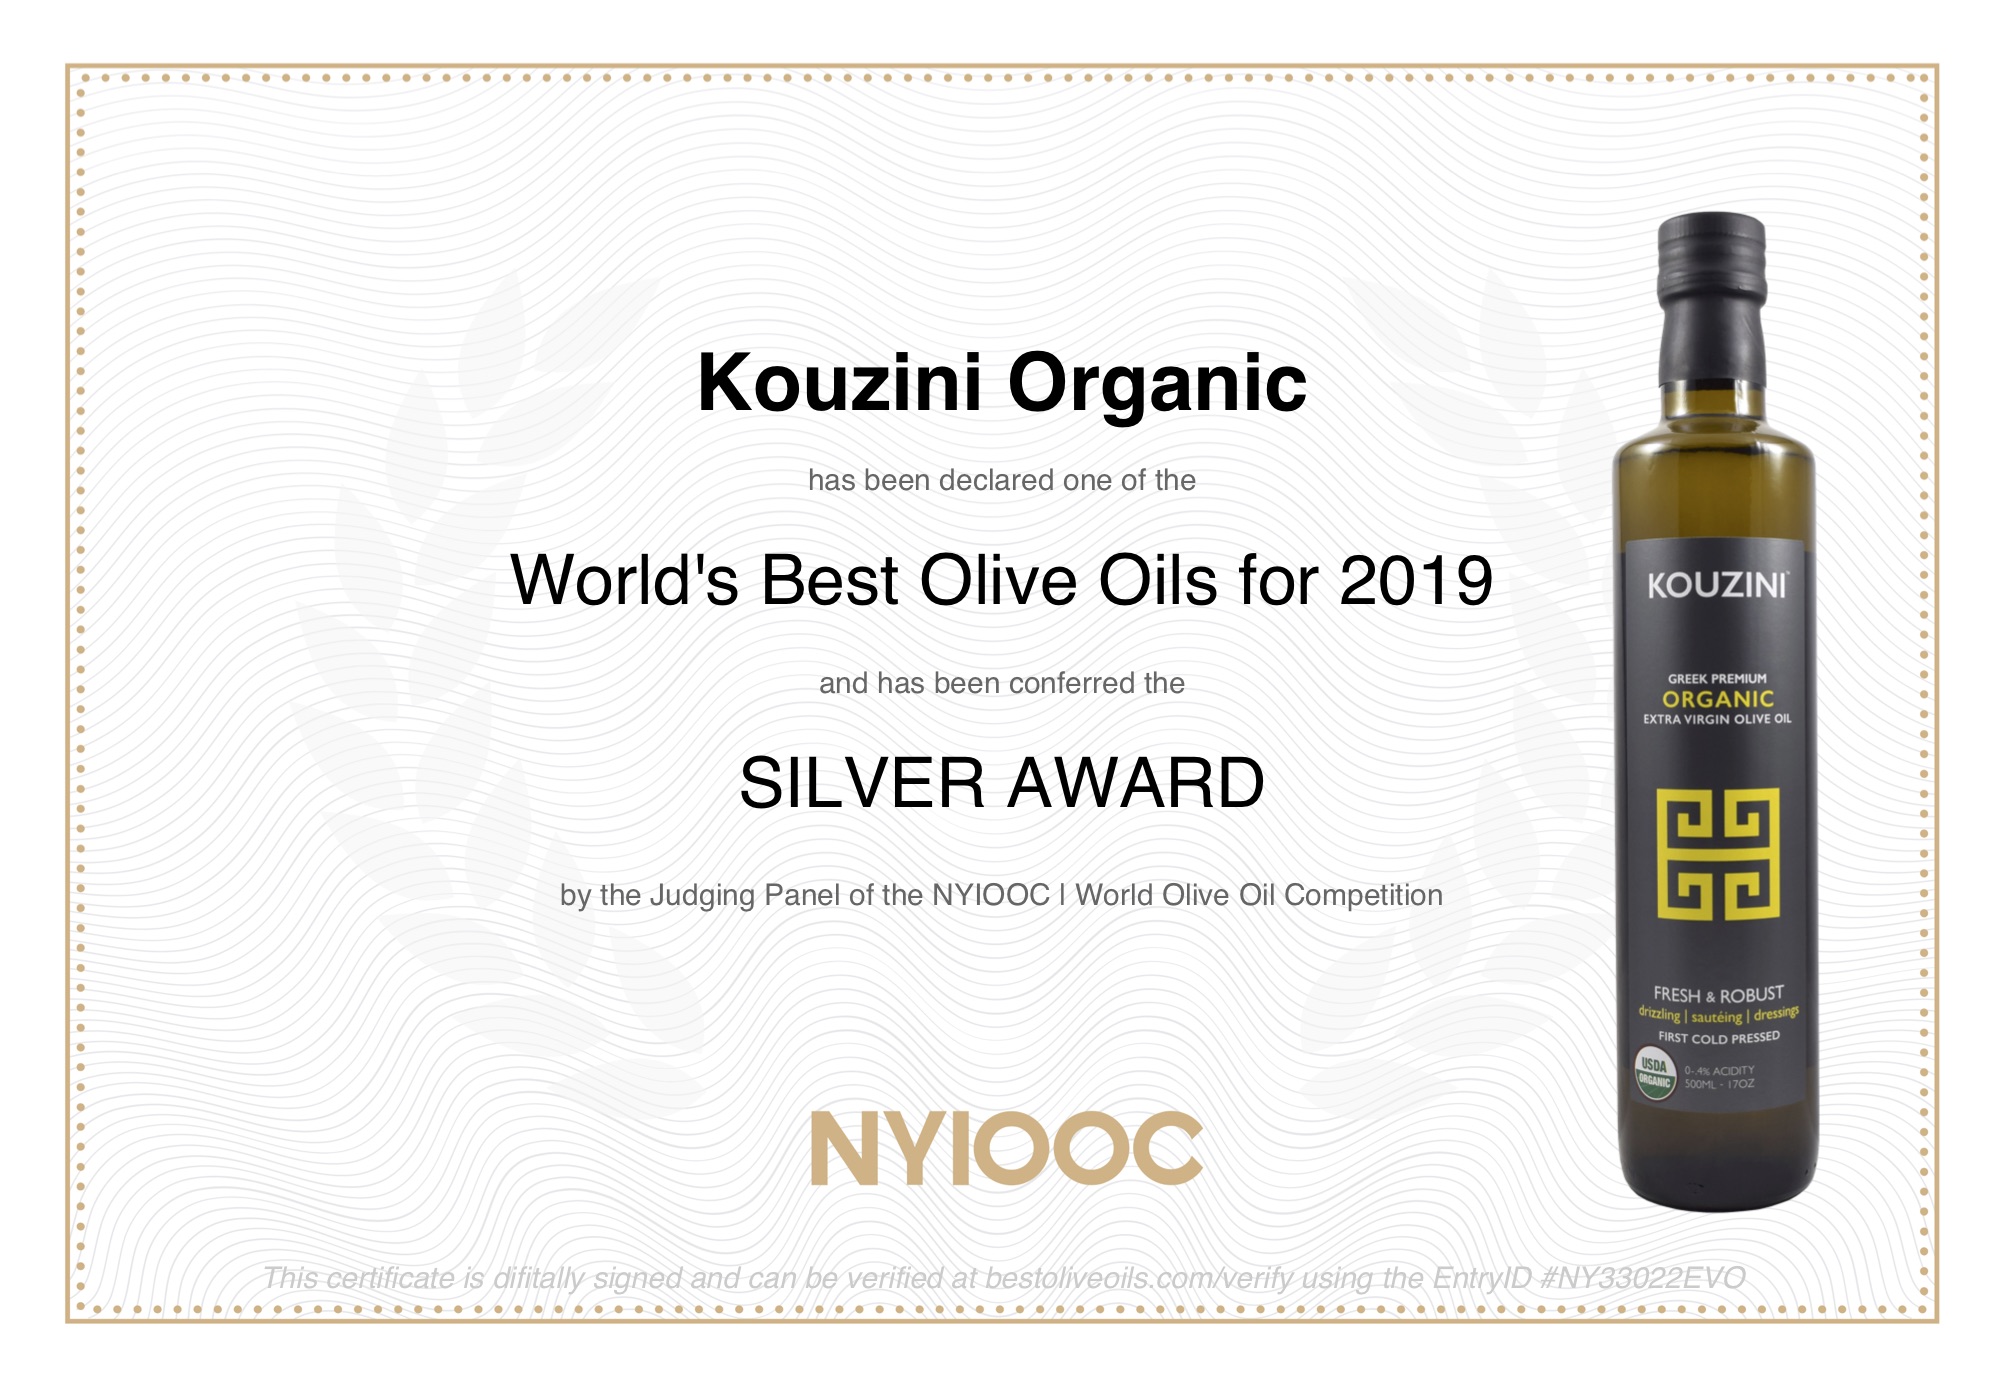 kouzini-organic Award.jpg